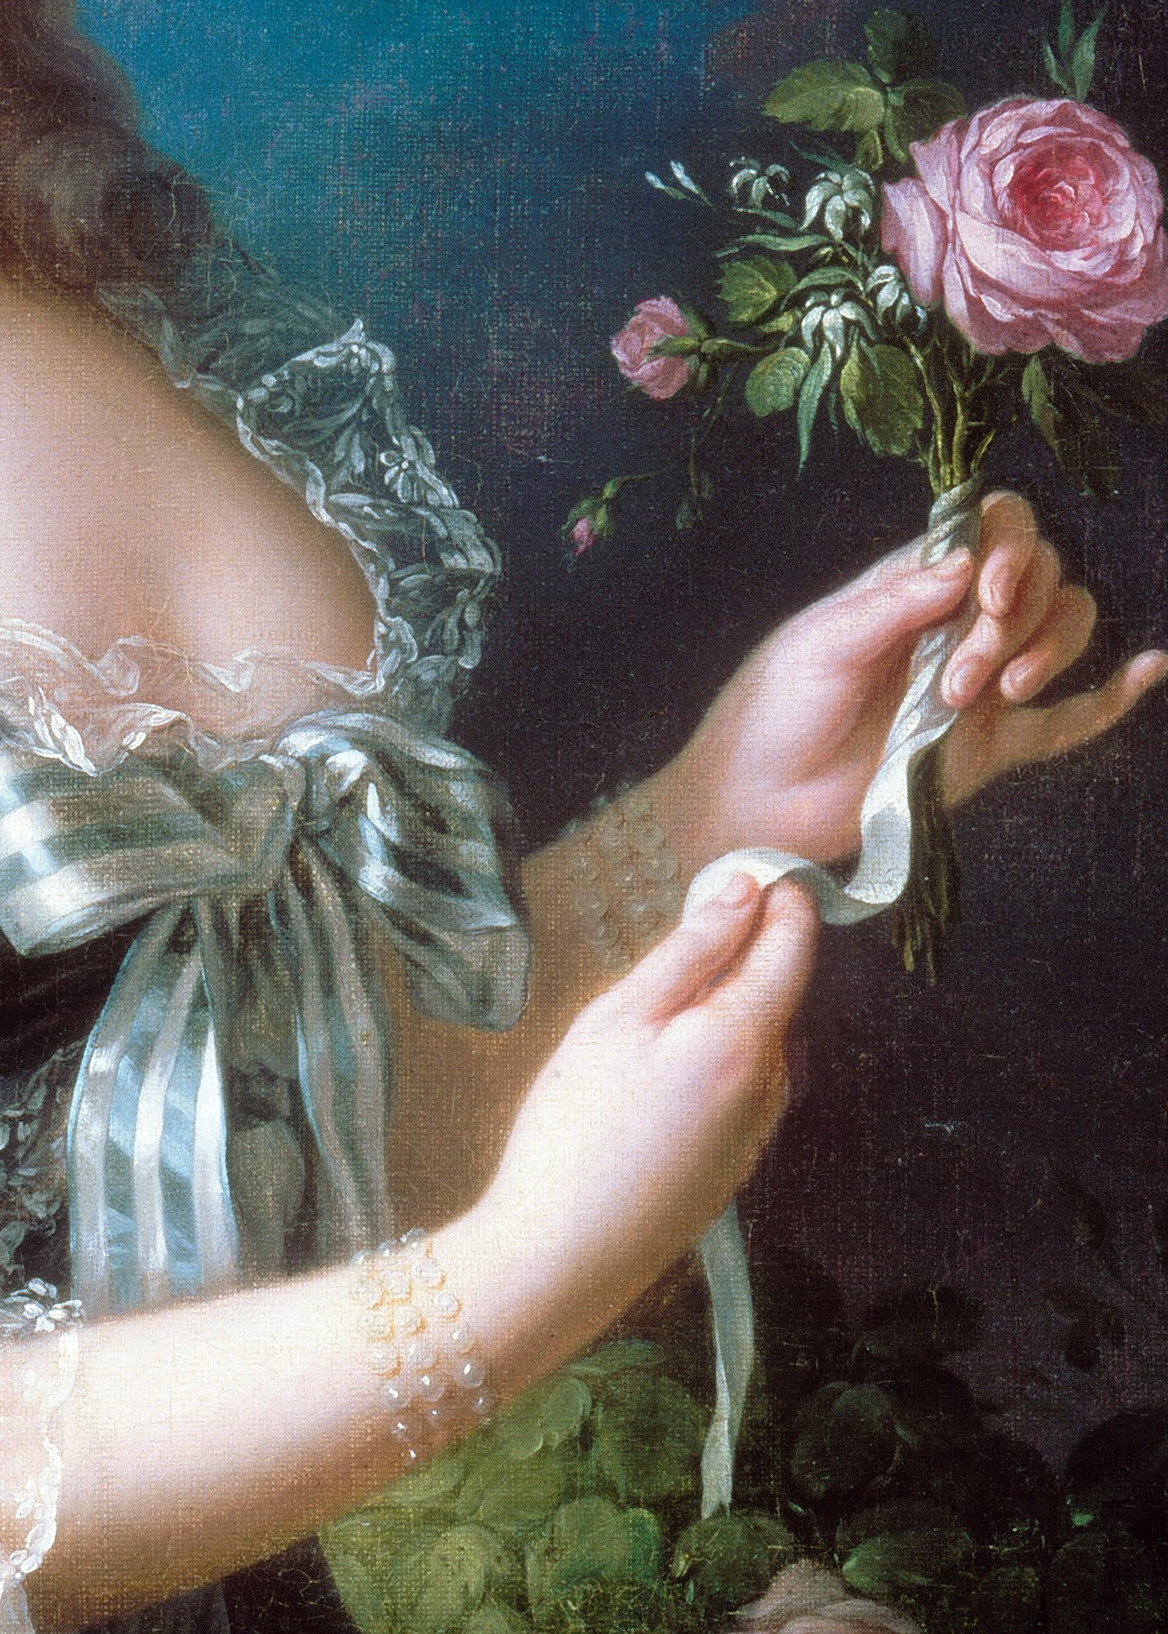 Marie Antoinette with the Rose (detail) 1783 by Louise Élisabeth Vigée Le Brun.